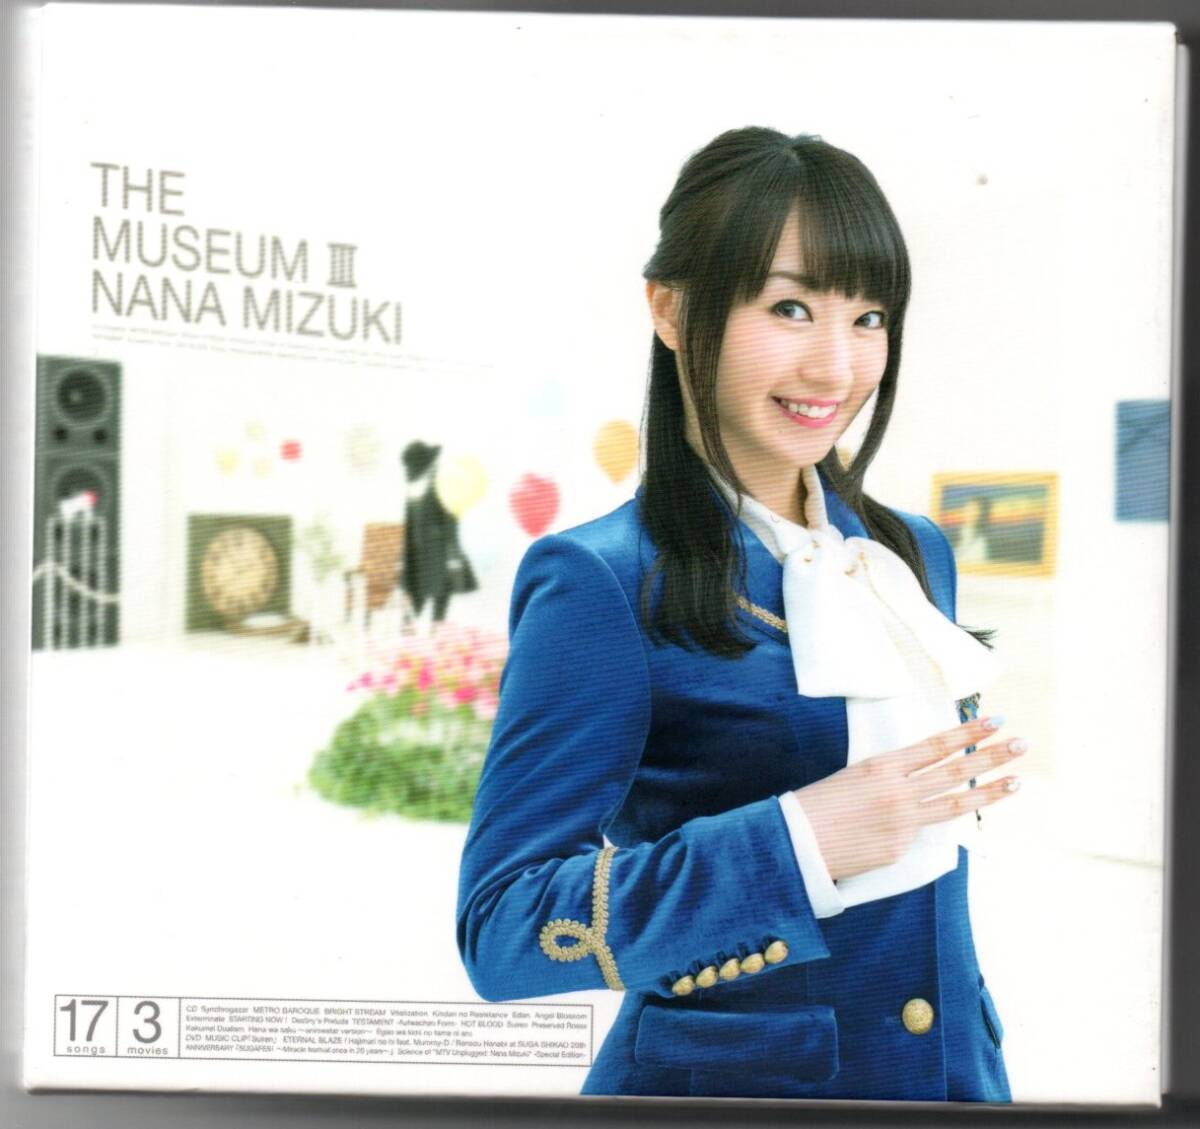 中古CD/THE MUSEUM III (DVD付) 水樹奈々 セル版の画像1